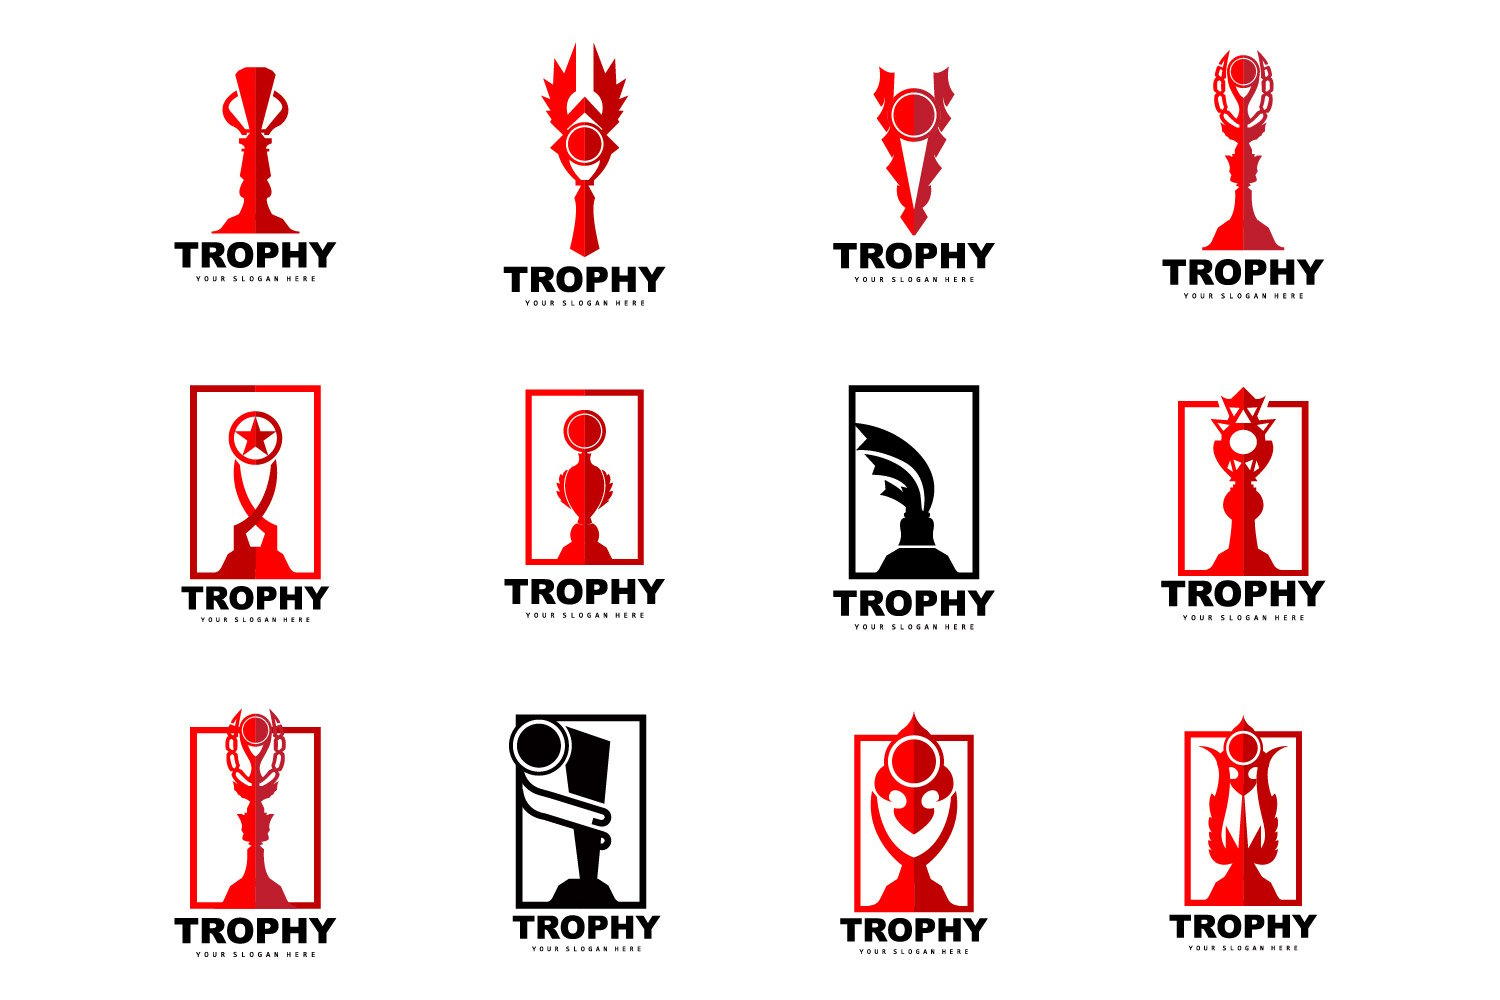 Kit Graphique #404674 Trophy Vin Divers Modles Web - Logo template Preview